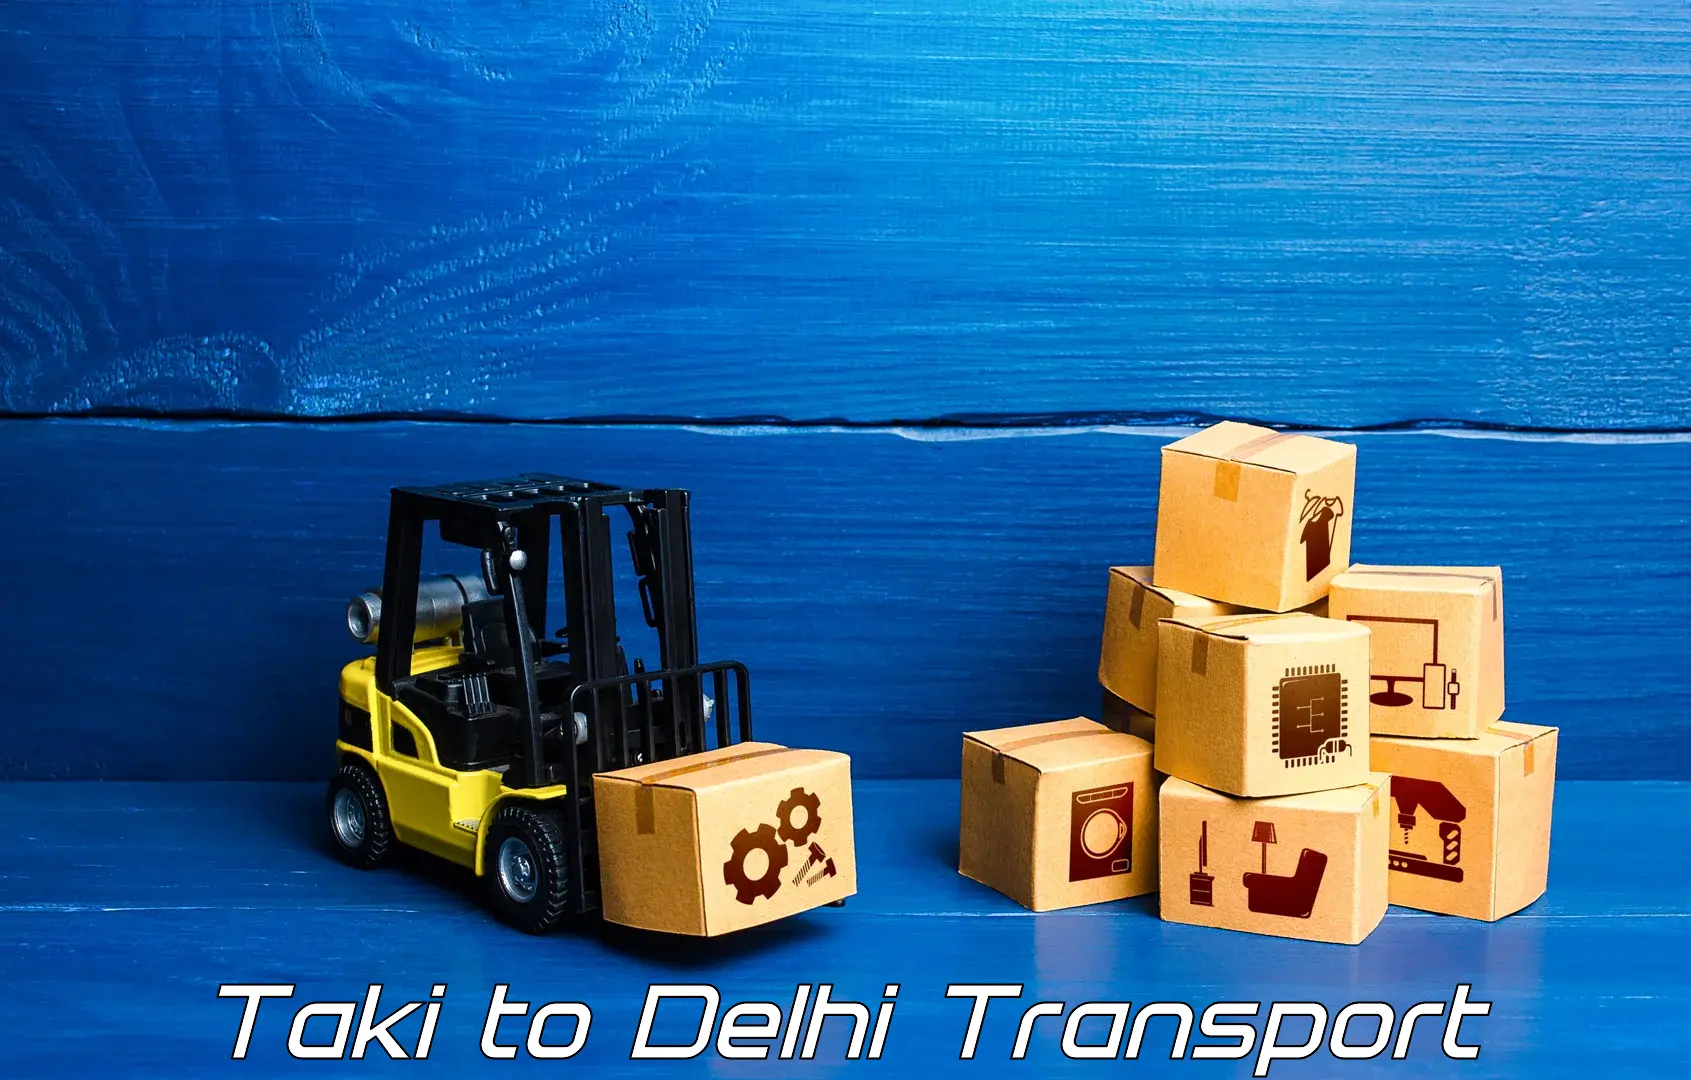 Transport services in Taki to Delhi